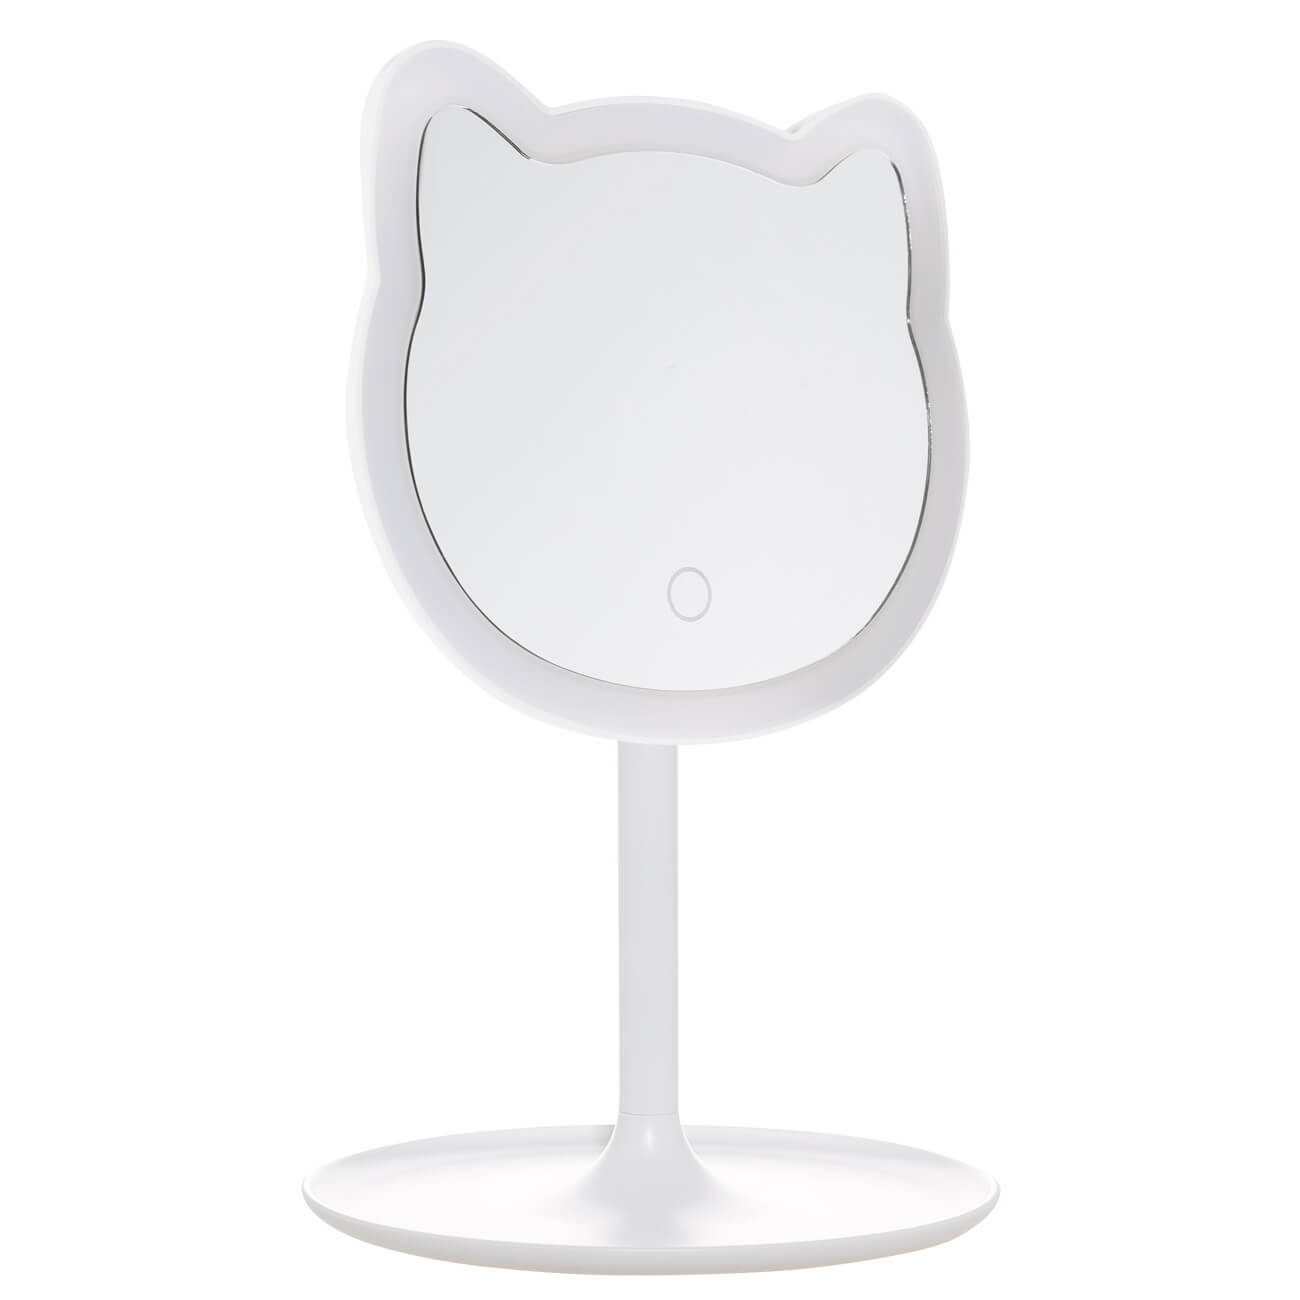 Зеркало настольное, 29 см, с подсветкой, на подставке, пластик, белое, Кот, Cat настольное косметическое зеркало ridder